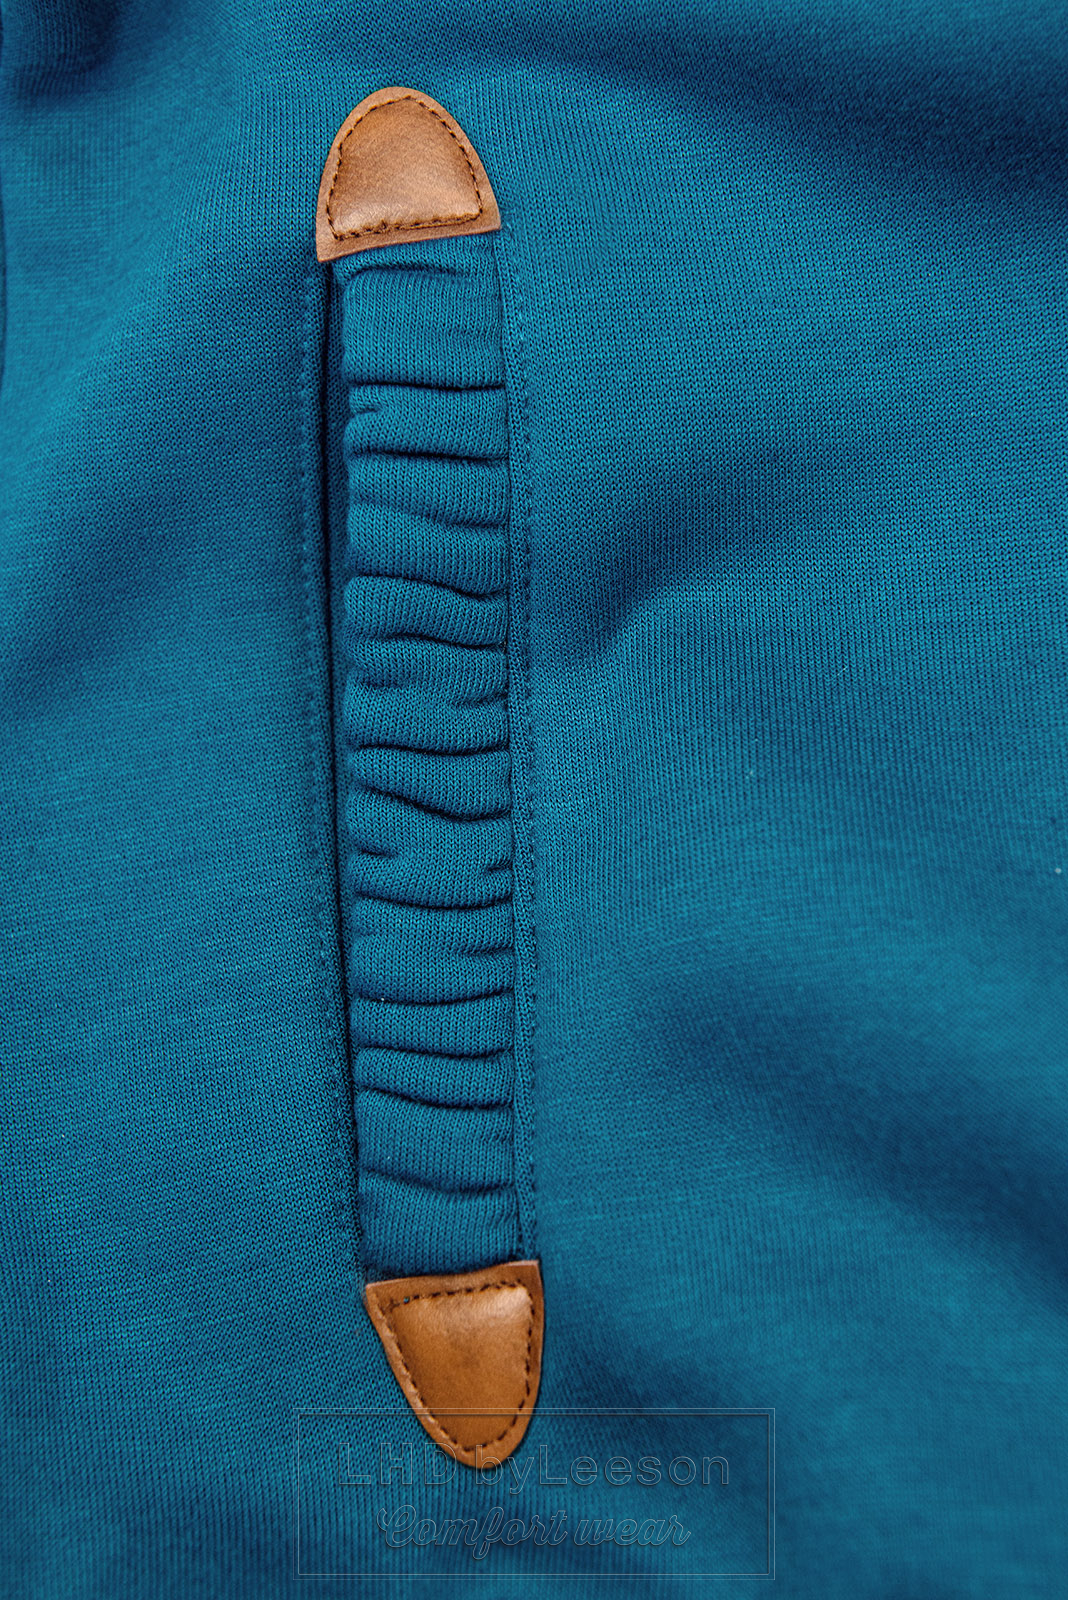 Turkusowa bluza z kolorową podszewką w kapturze